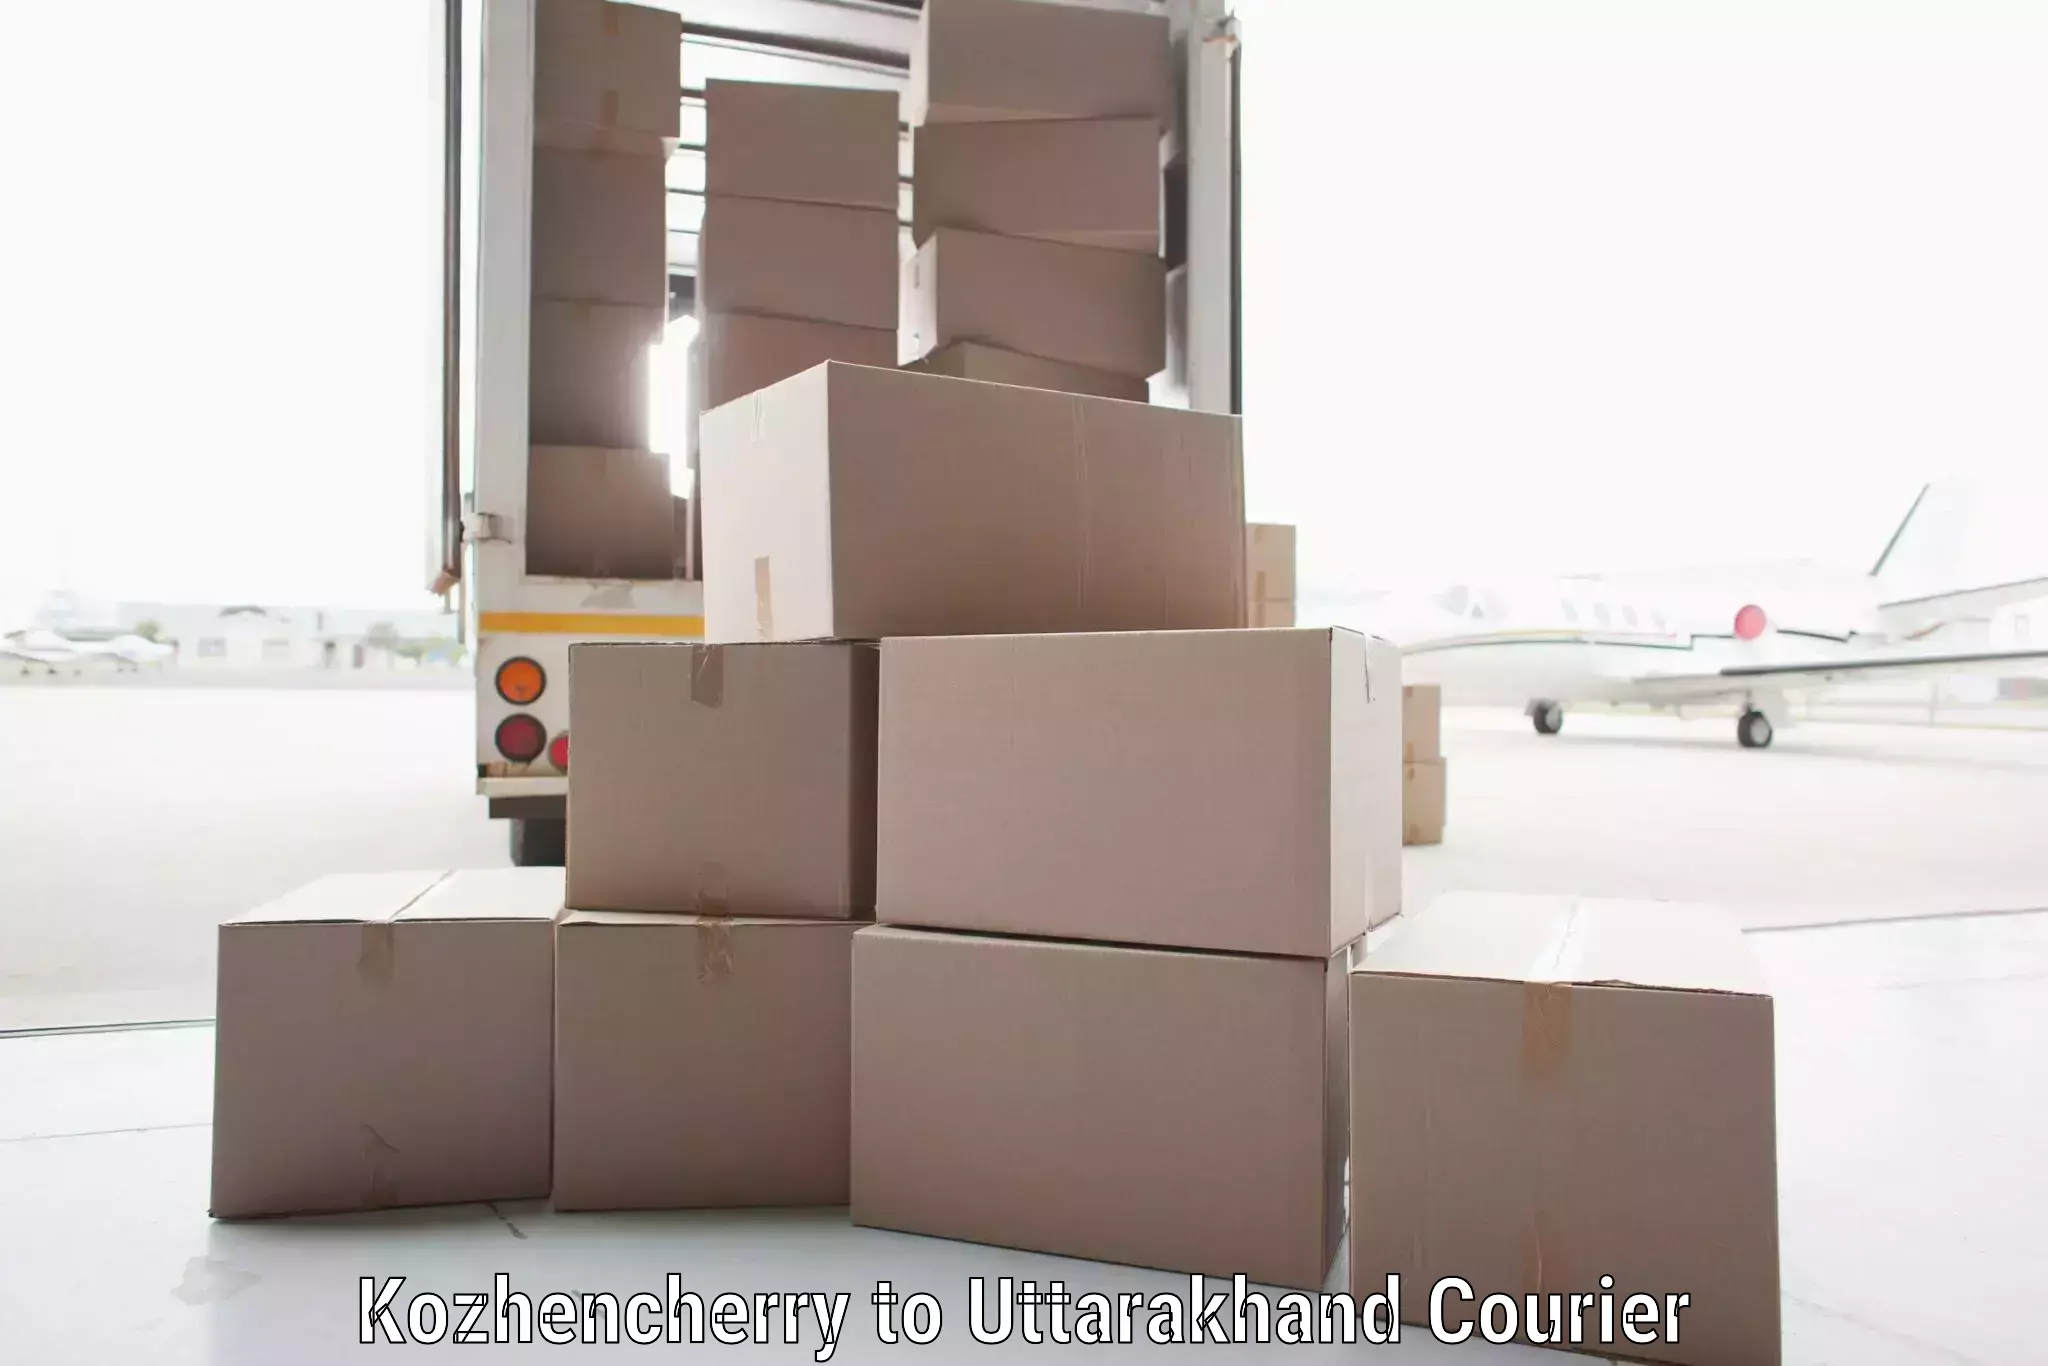 High-capacity shipping options Kozhencherry to Karnaprayag